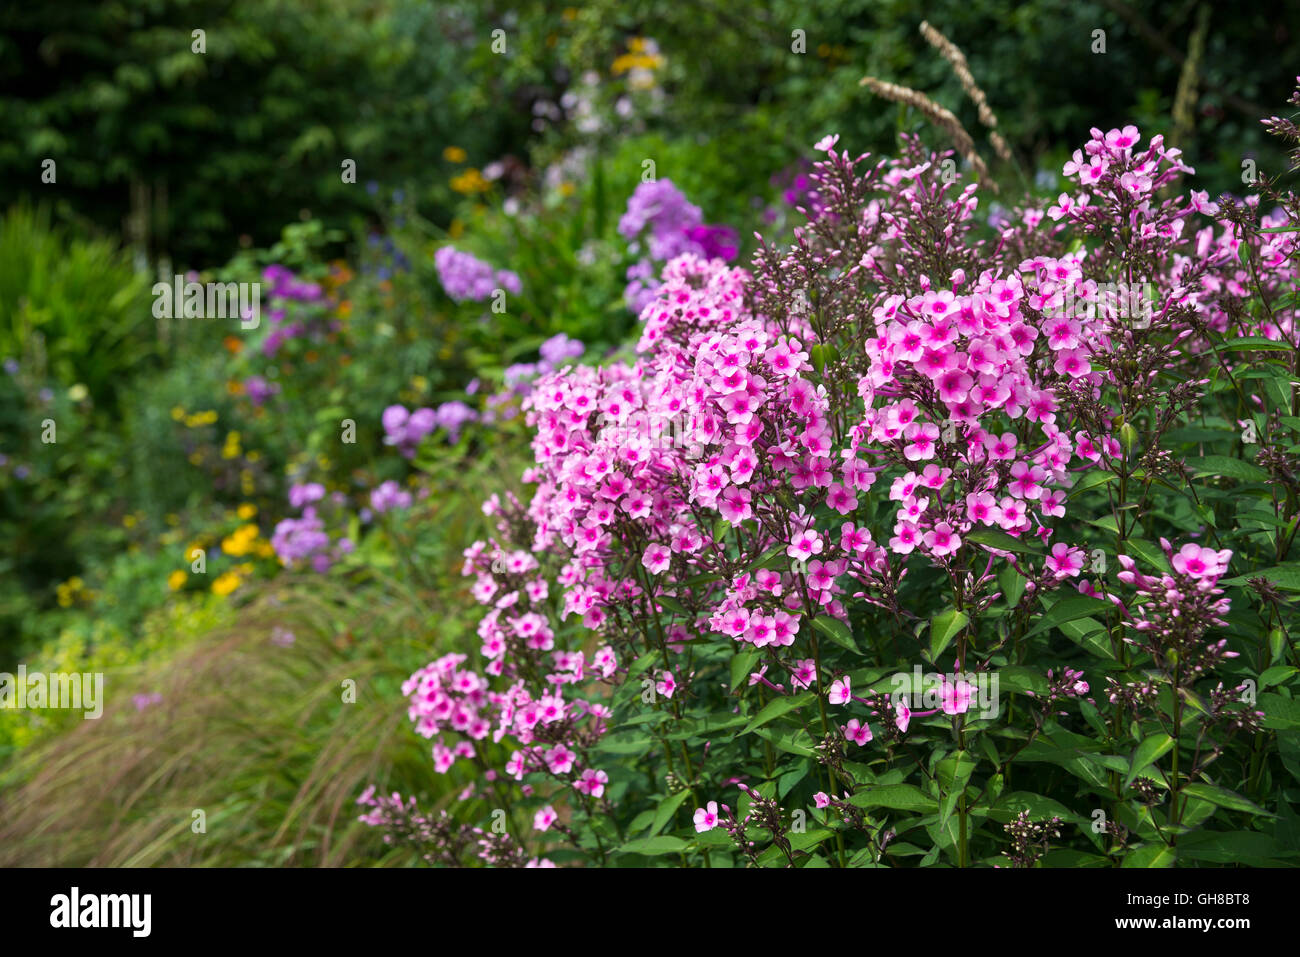 Beautiful pink garden Phlox (phlox paniculata) in a summer flower border. Stock Photo